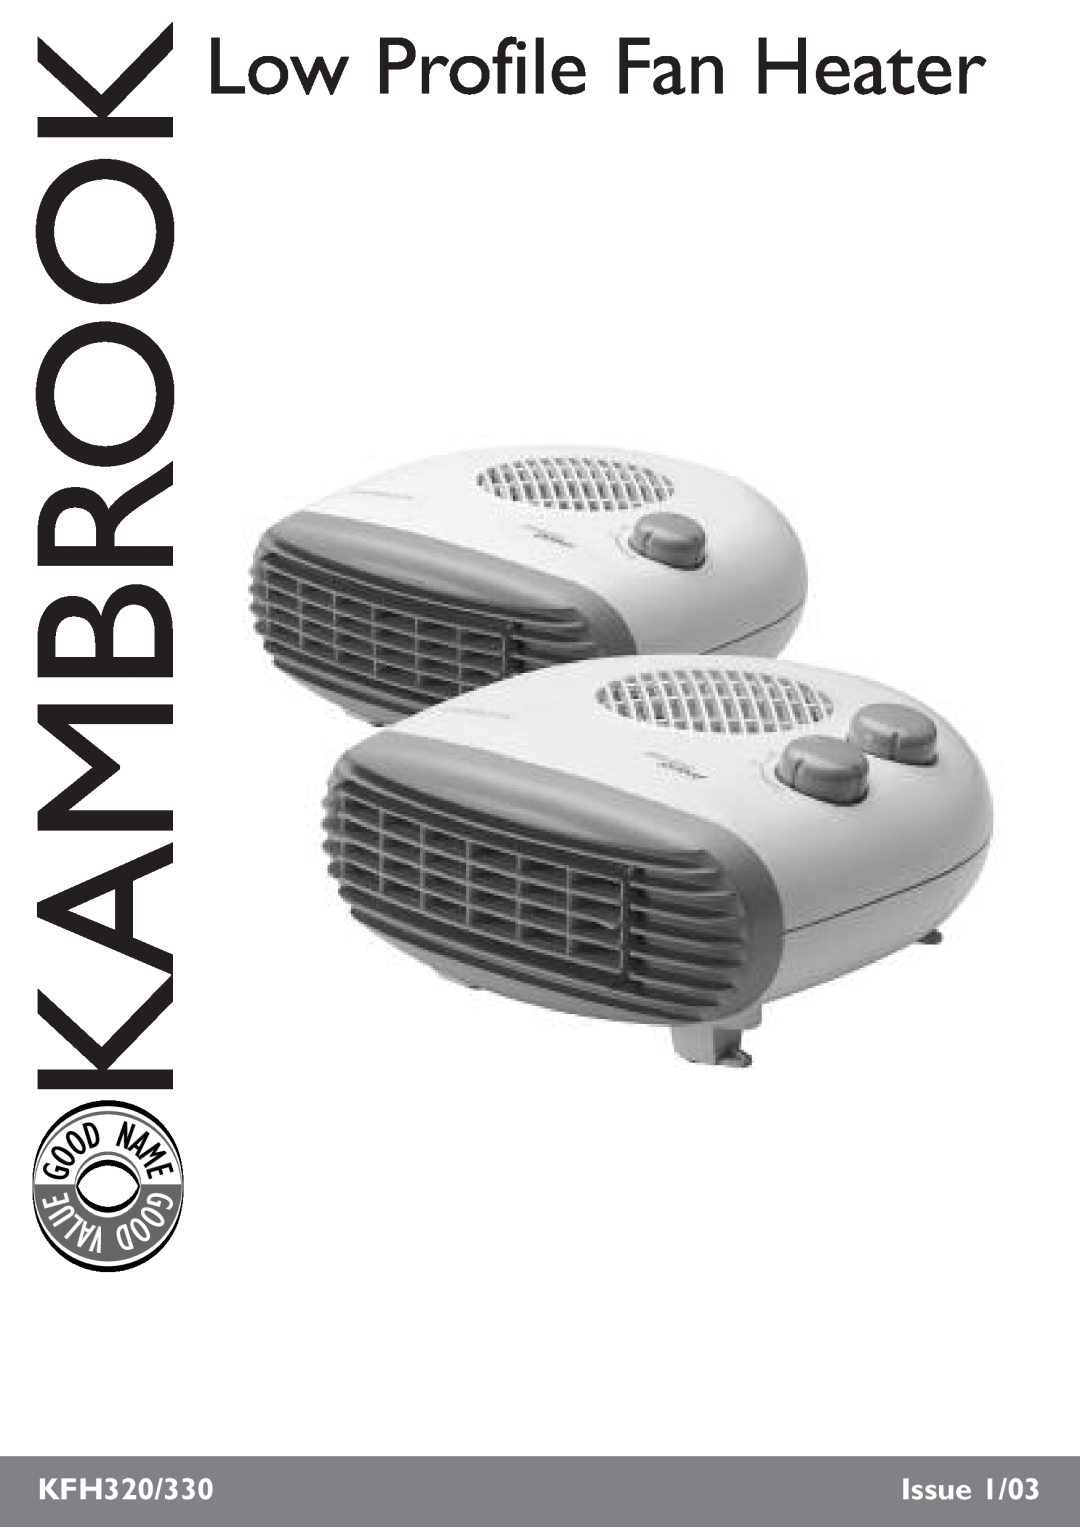 Kambrook KFH330 manual U Lav, Low Profile Fan Heater, KFH320/330, Issue 1/03 